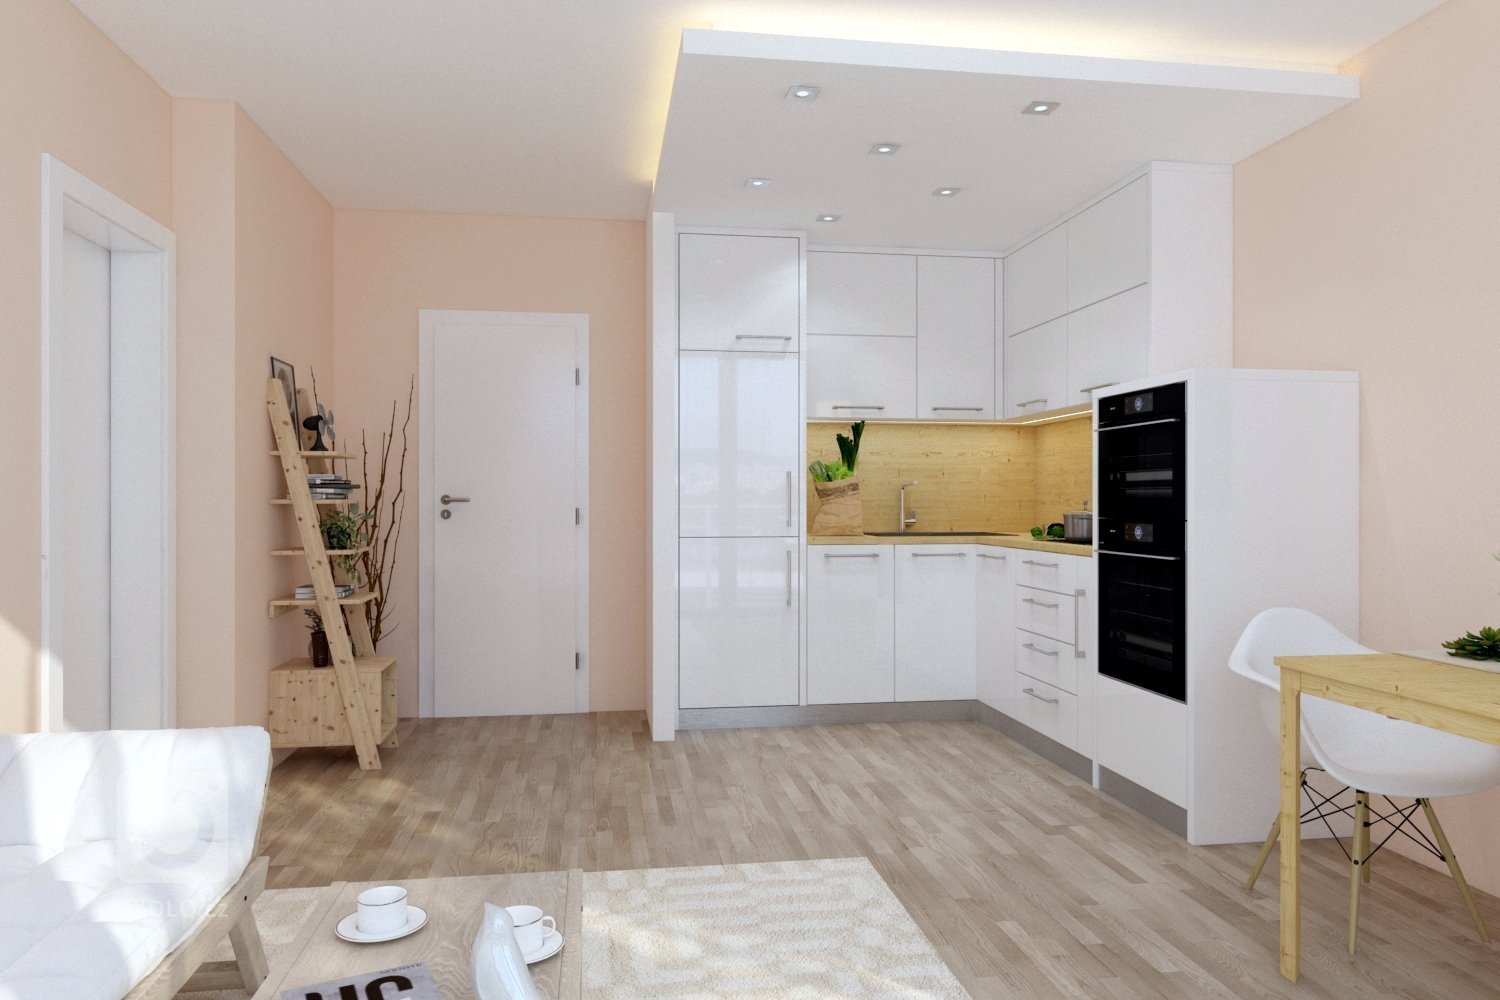 Světlý interiér ve spojení s moderní kuchyní působí velice lehce a vzdušně. Prostor tvoří  tři na sebe navazující  funkční zóny  - kuchyňský kout, jídelní prostor a obývací část. 